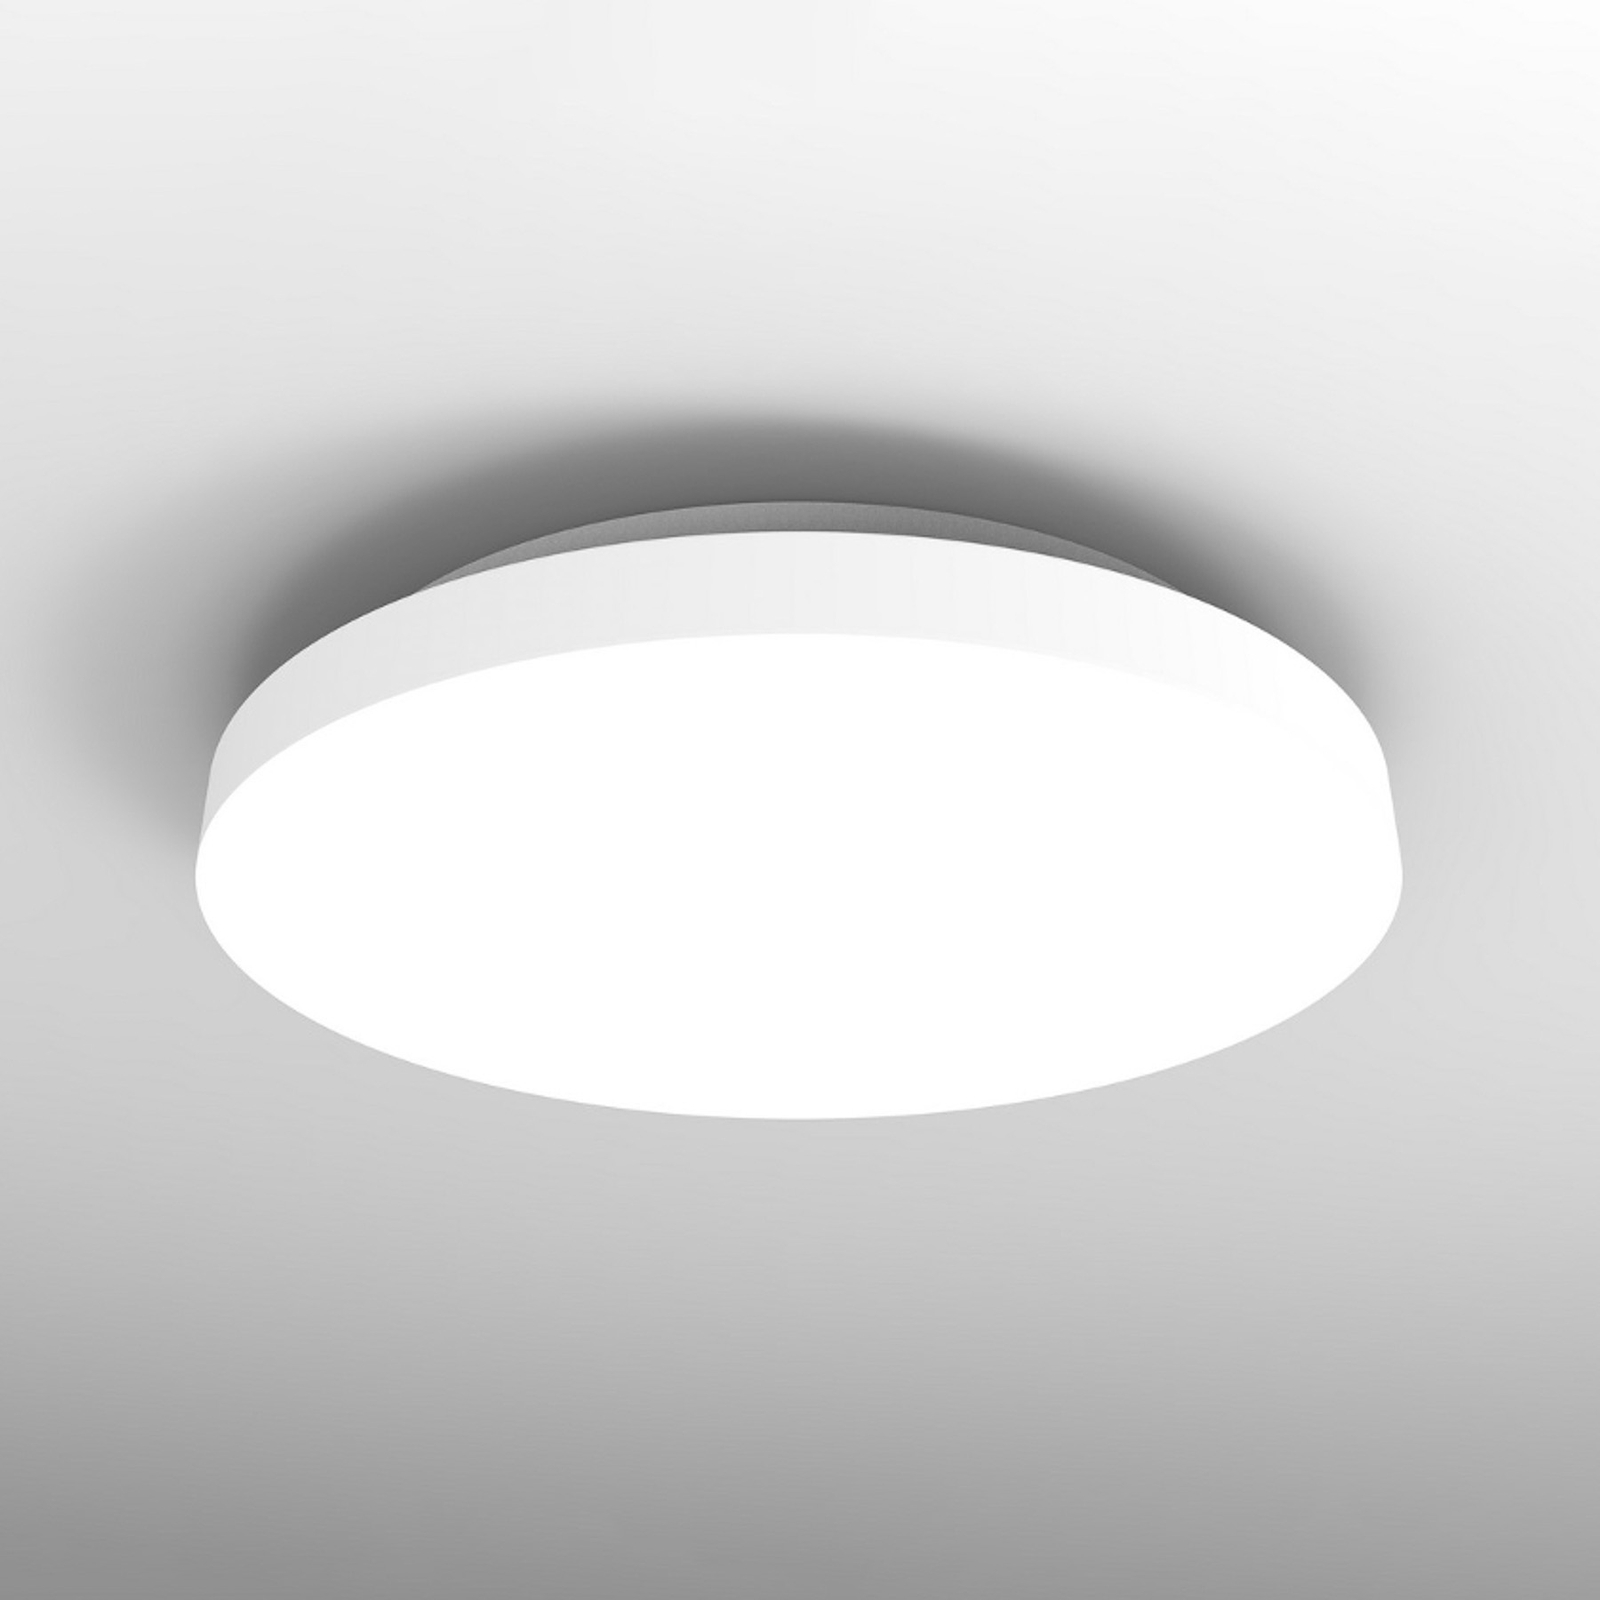 LED ceiling light Allrounder 2, 3000K